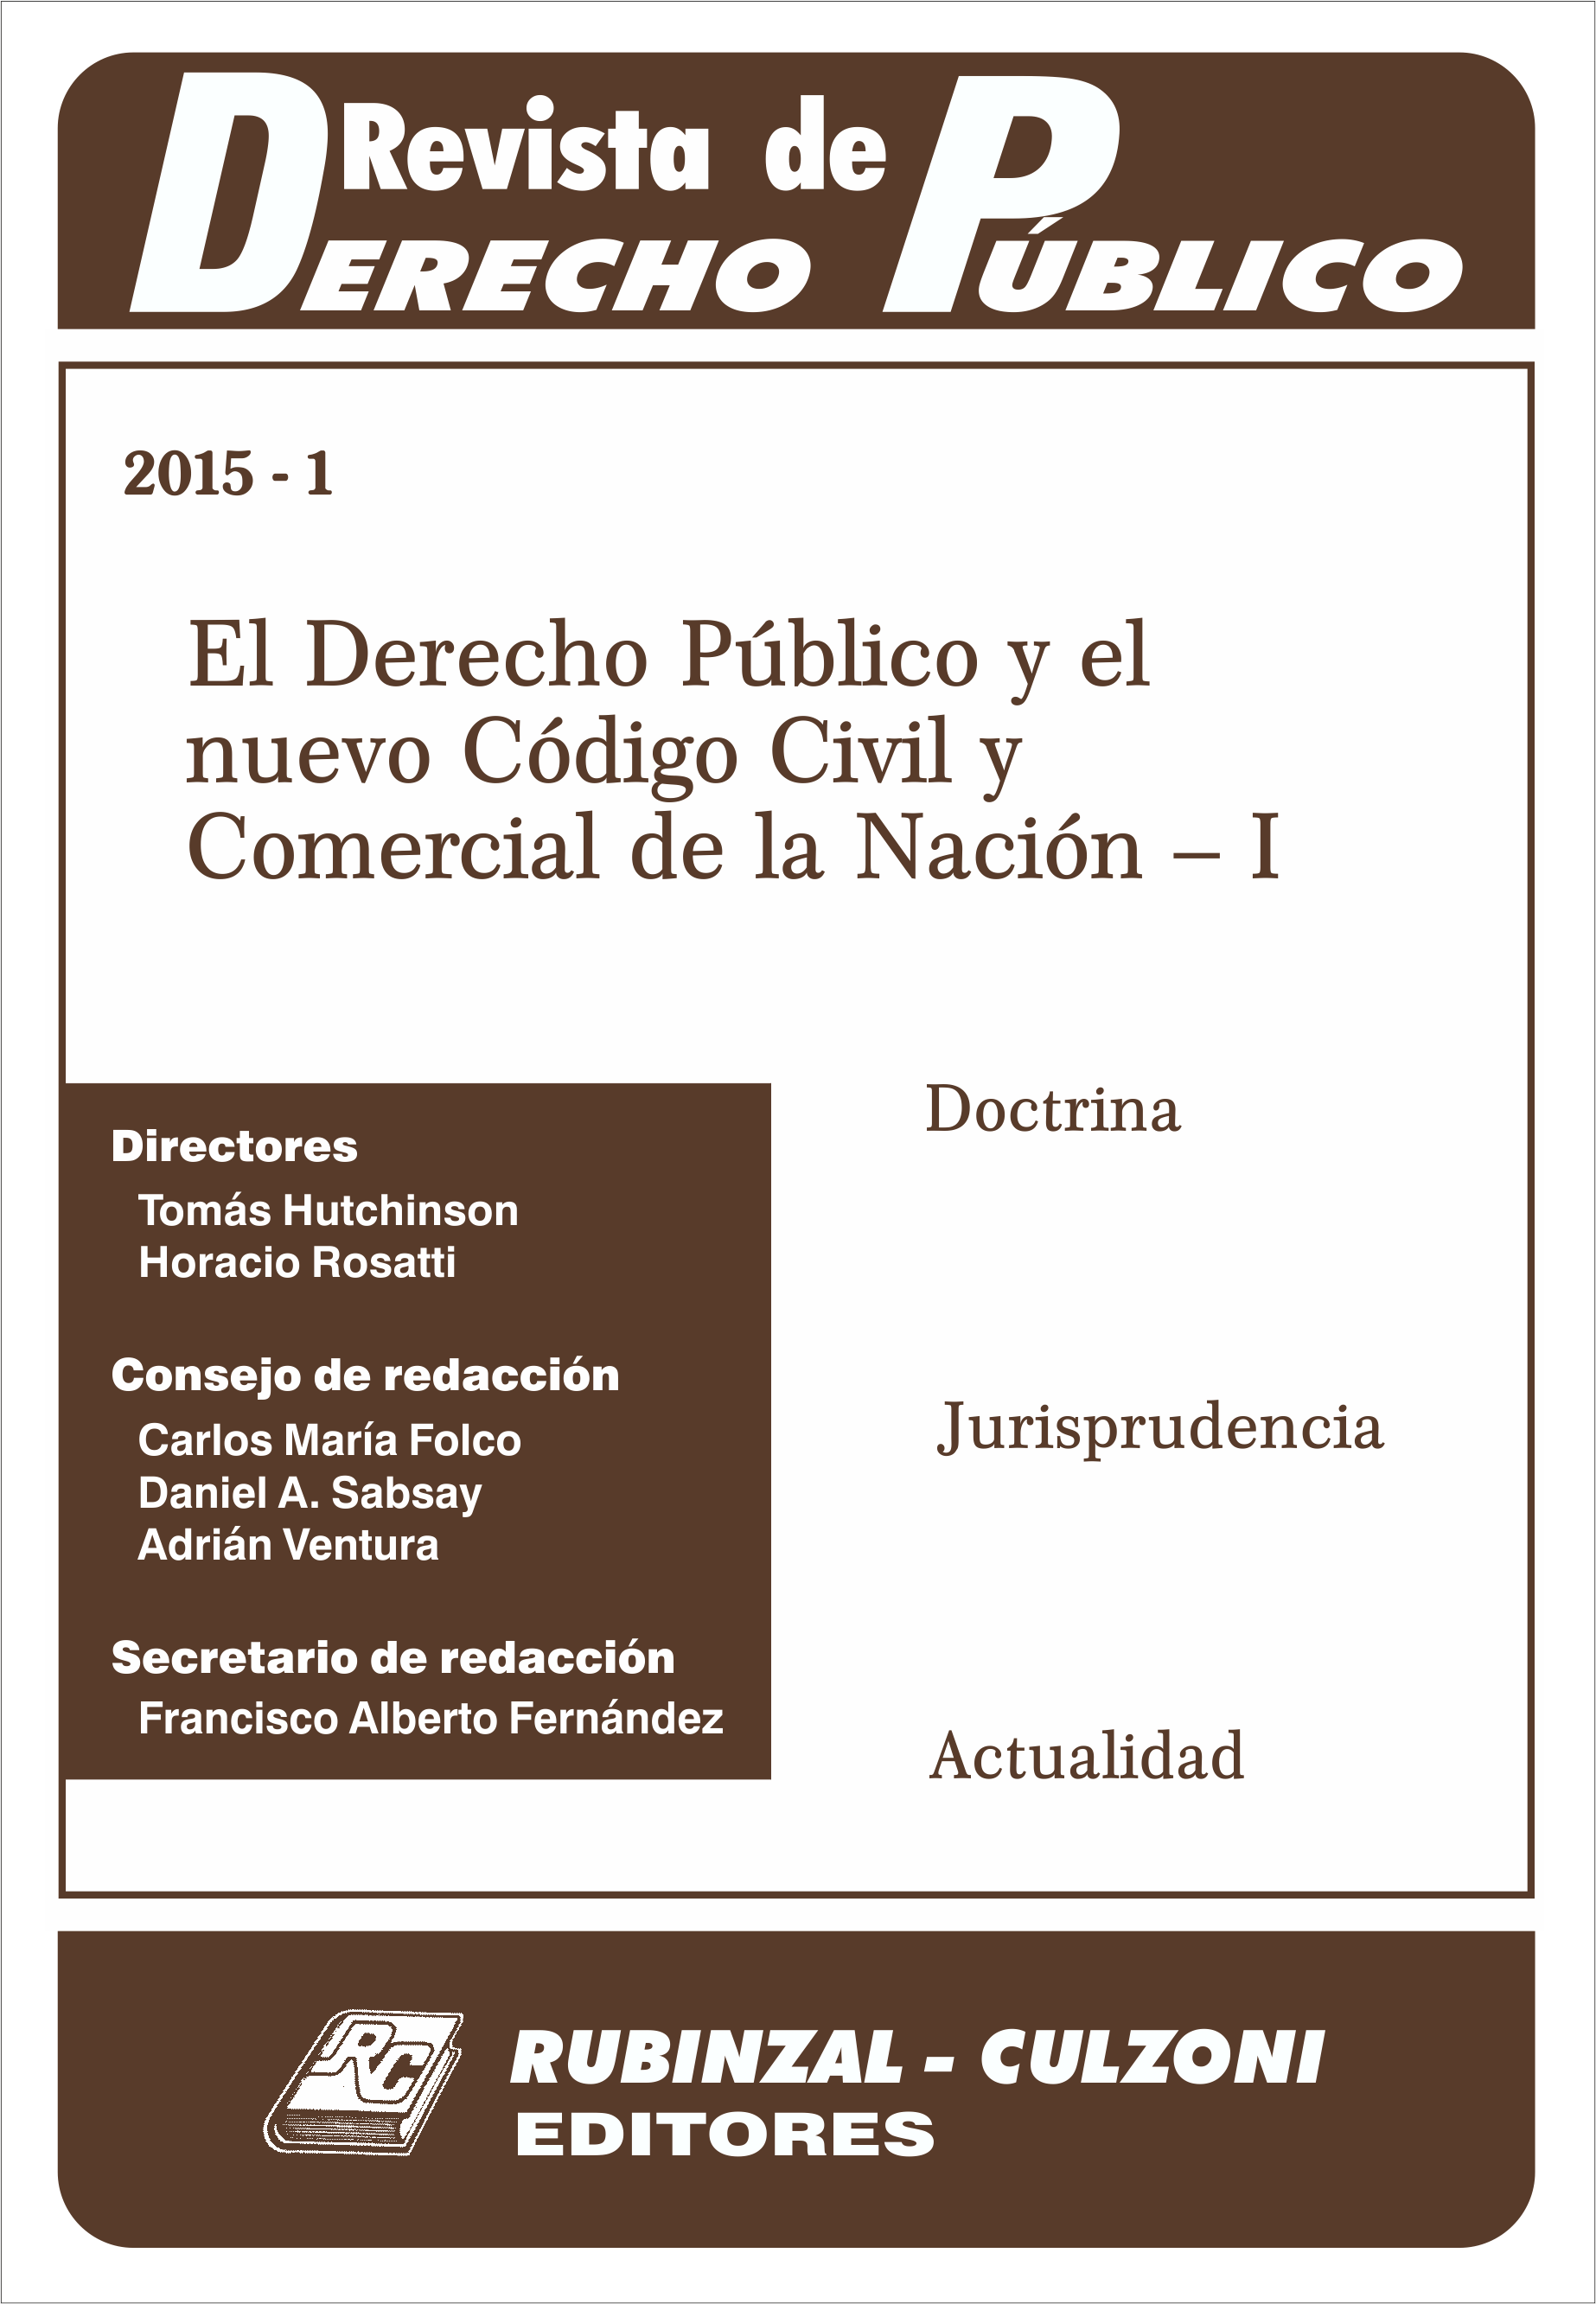 Revista de Derecho Público - El Derecho Público y el nuevo Código Civil y Comercial de la Nación - I